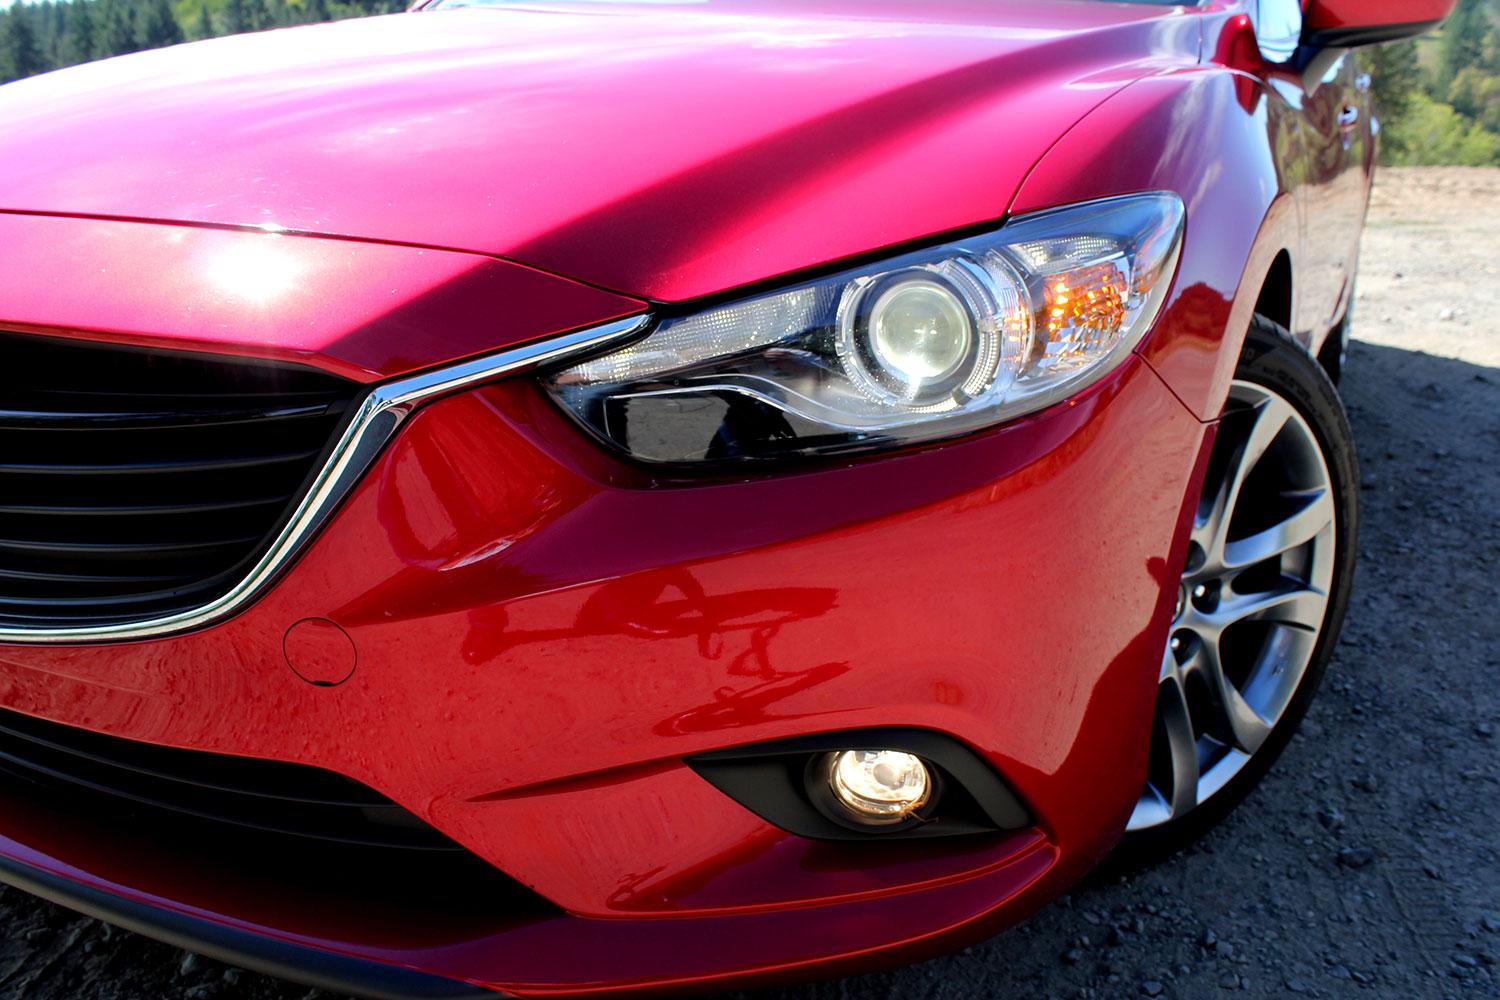 2015 Mazda Mazda 6 headlight full